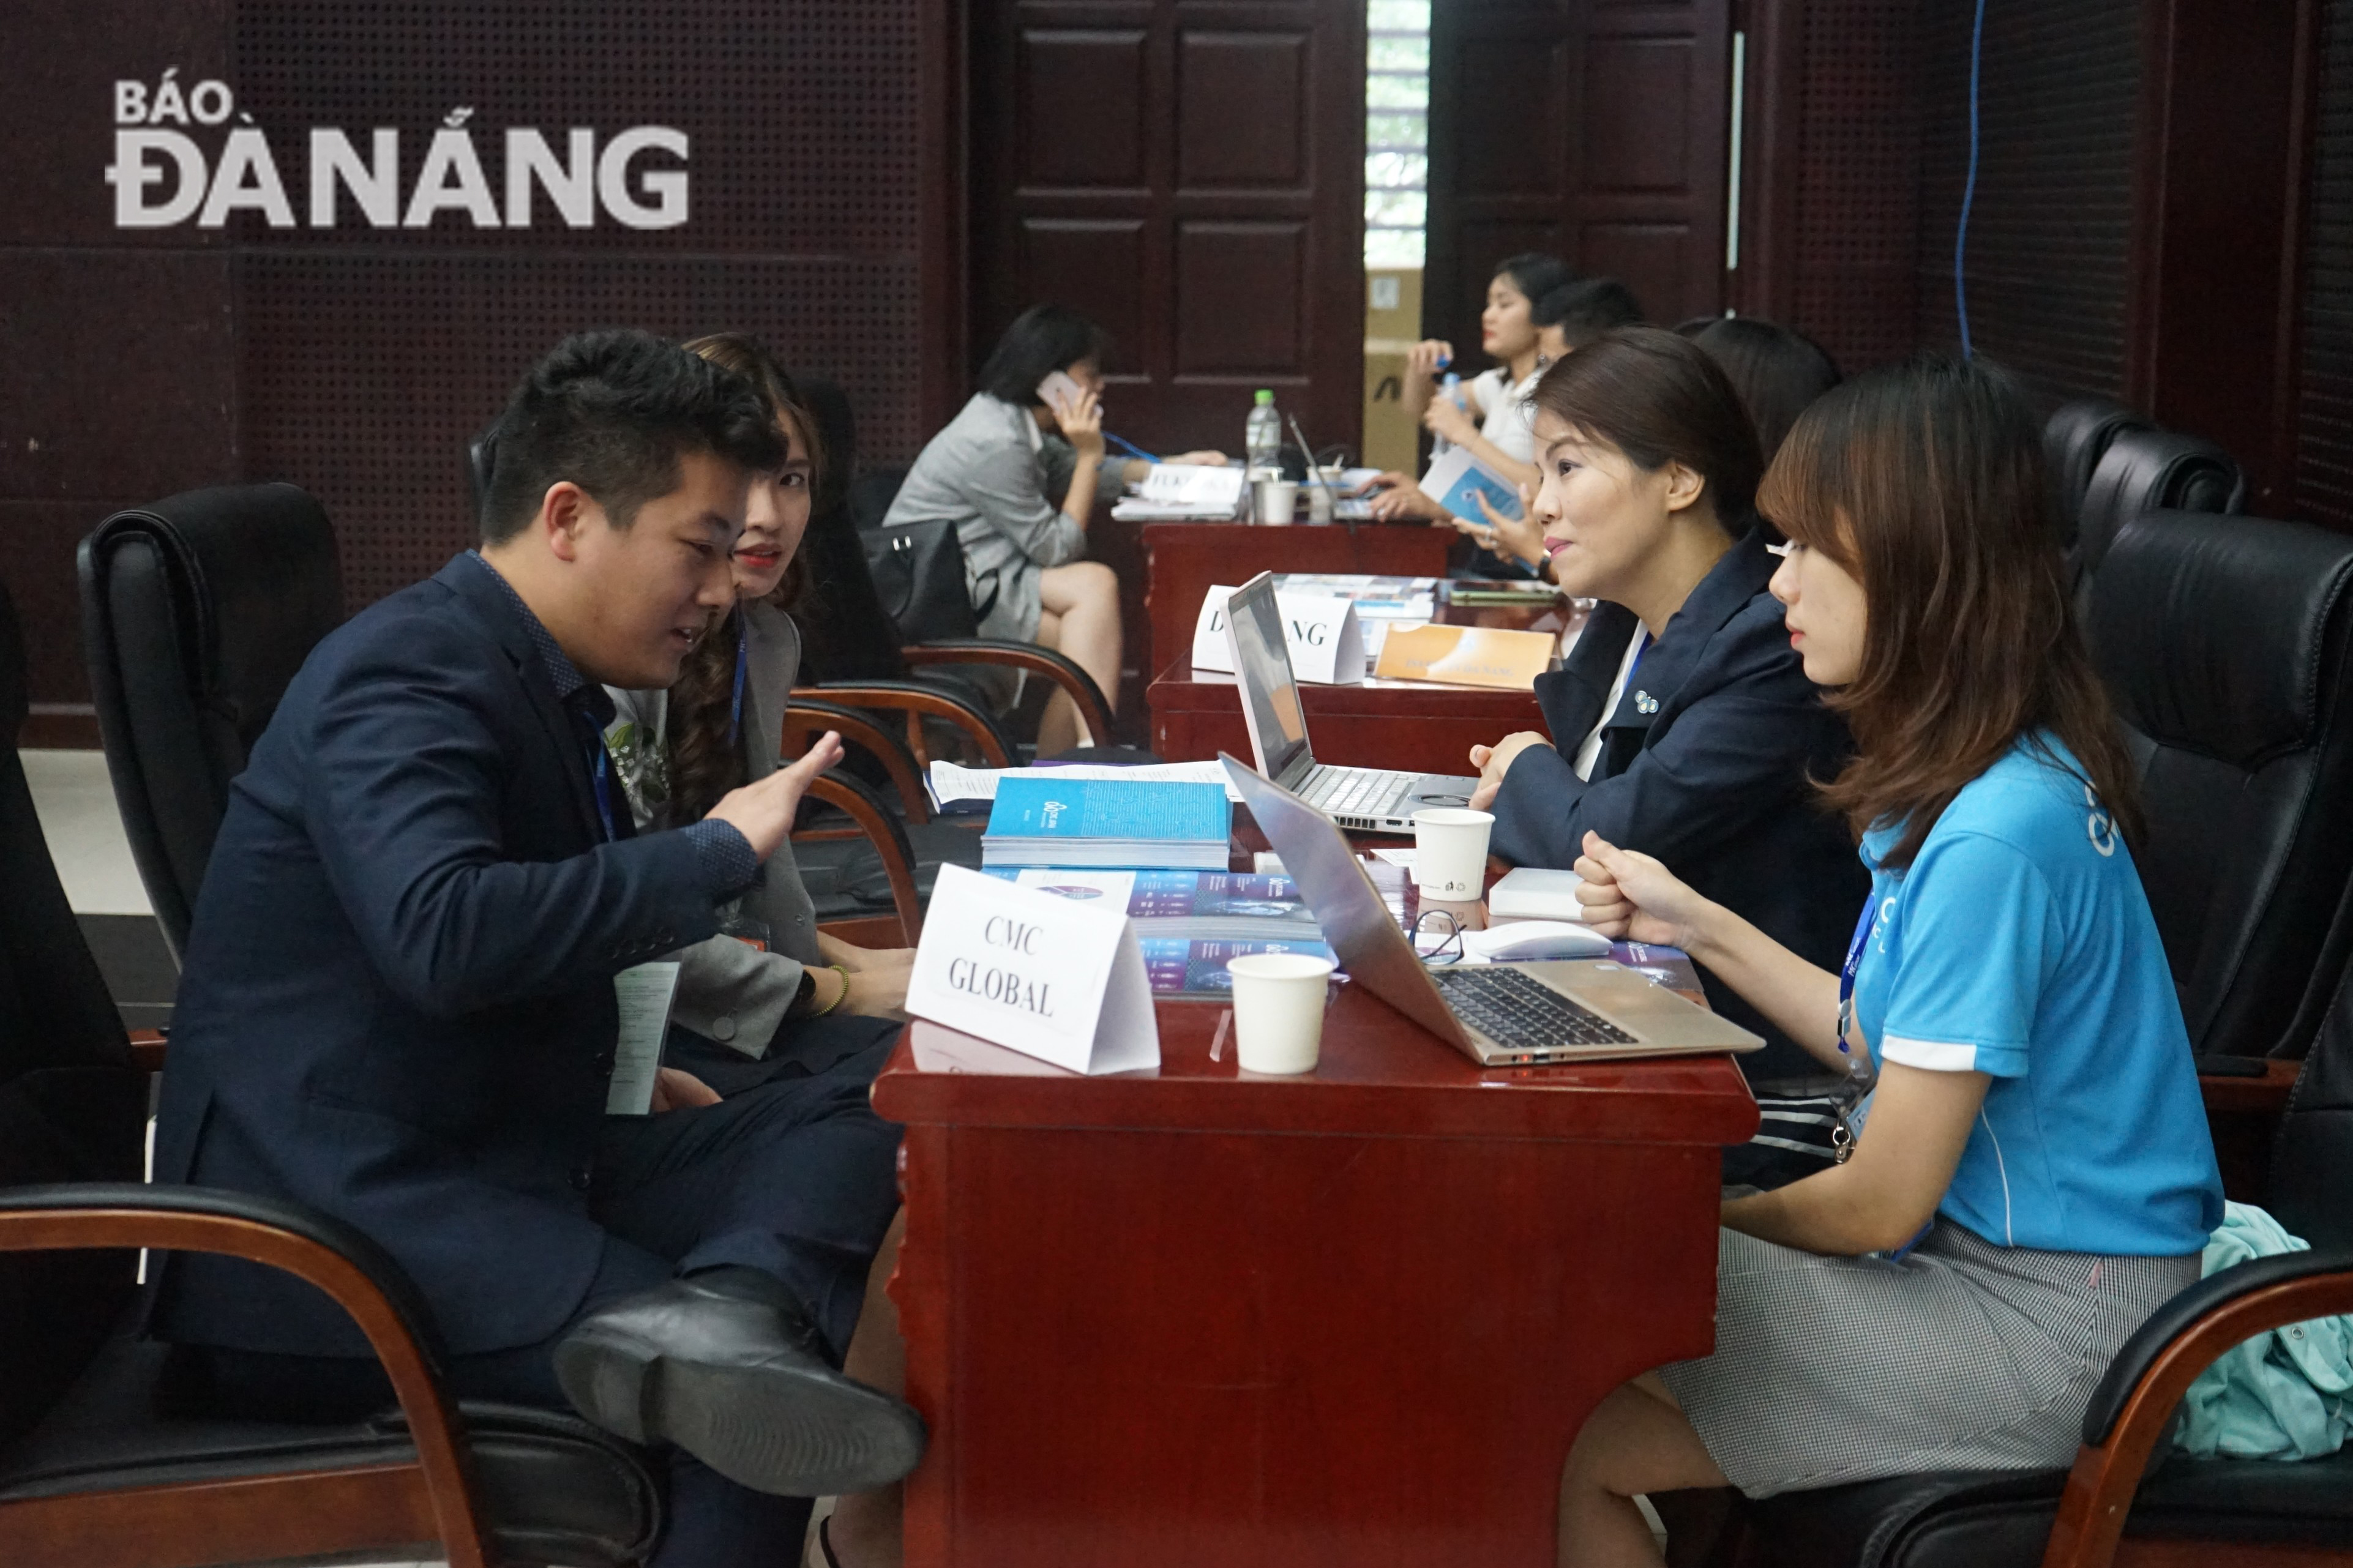 Khoảng 70% doanh nghiệp Nhật Bản tại Việt Nam có ý định mở rộng kinh doanh tại châu Á và ASEAN, đặc biệt là Việt Nam. Đây là cơ hội lớn để các doanh nghiệp CNTT Đà Nẵng kết nối, tìm đối tác, khách hàng...